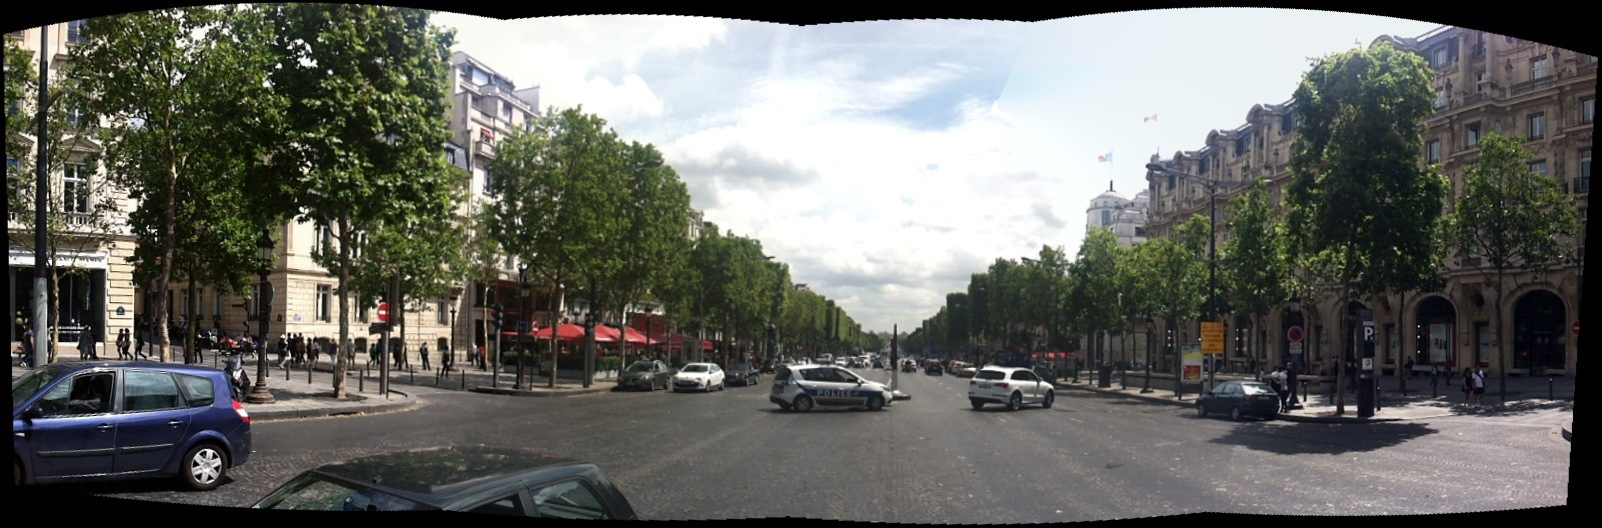 Champs-Élysées outside the main vehicle entrance of the Paris